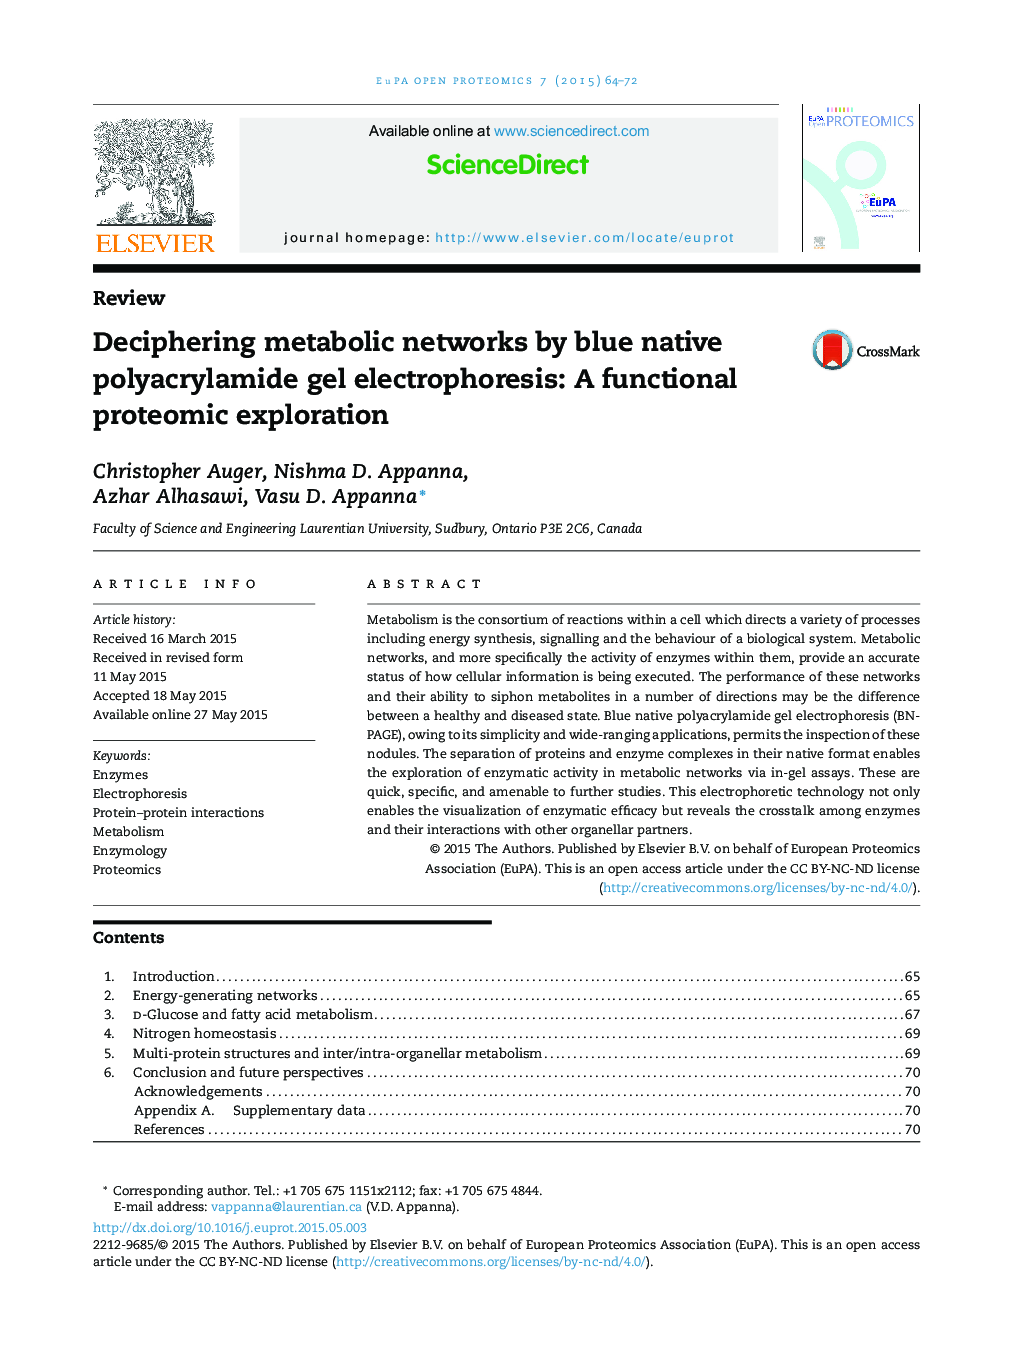 تجزیه و تحلیل شبکه های متابولیک الکتروفورز ژل پلی آکریل آمید آبی بومی: اکتشاف پروتئومیک عملکردی 